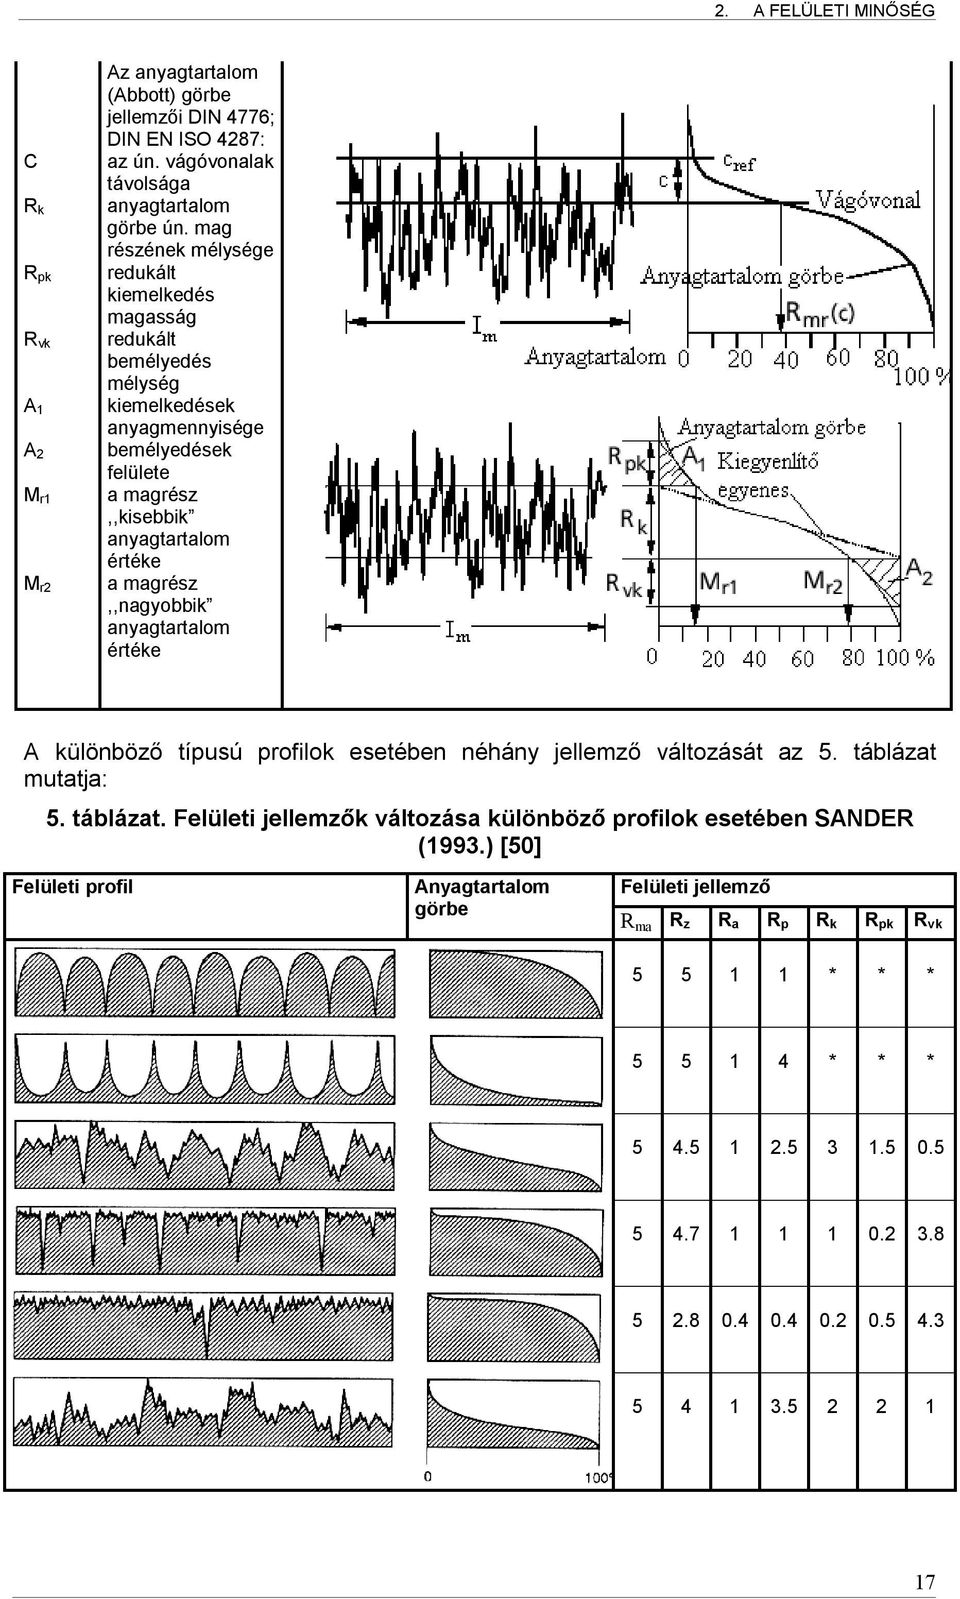 magrész,,nagyobbik anyagtartalom értéke A különböző típusú profilok esetében néhány jellemző változását az 5. táblázat mutatja: 5. táblázat. Felületi jellemzők változása különböző profilok esetében SANDER (1993.